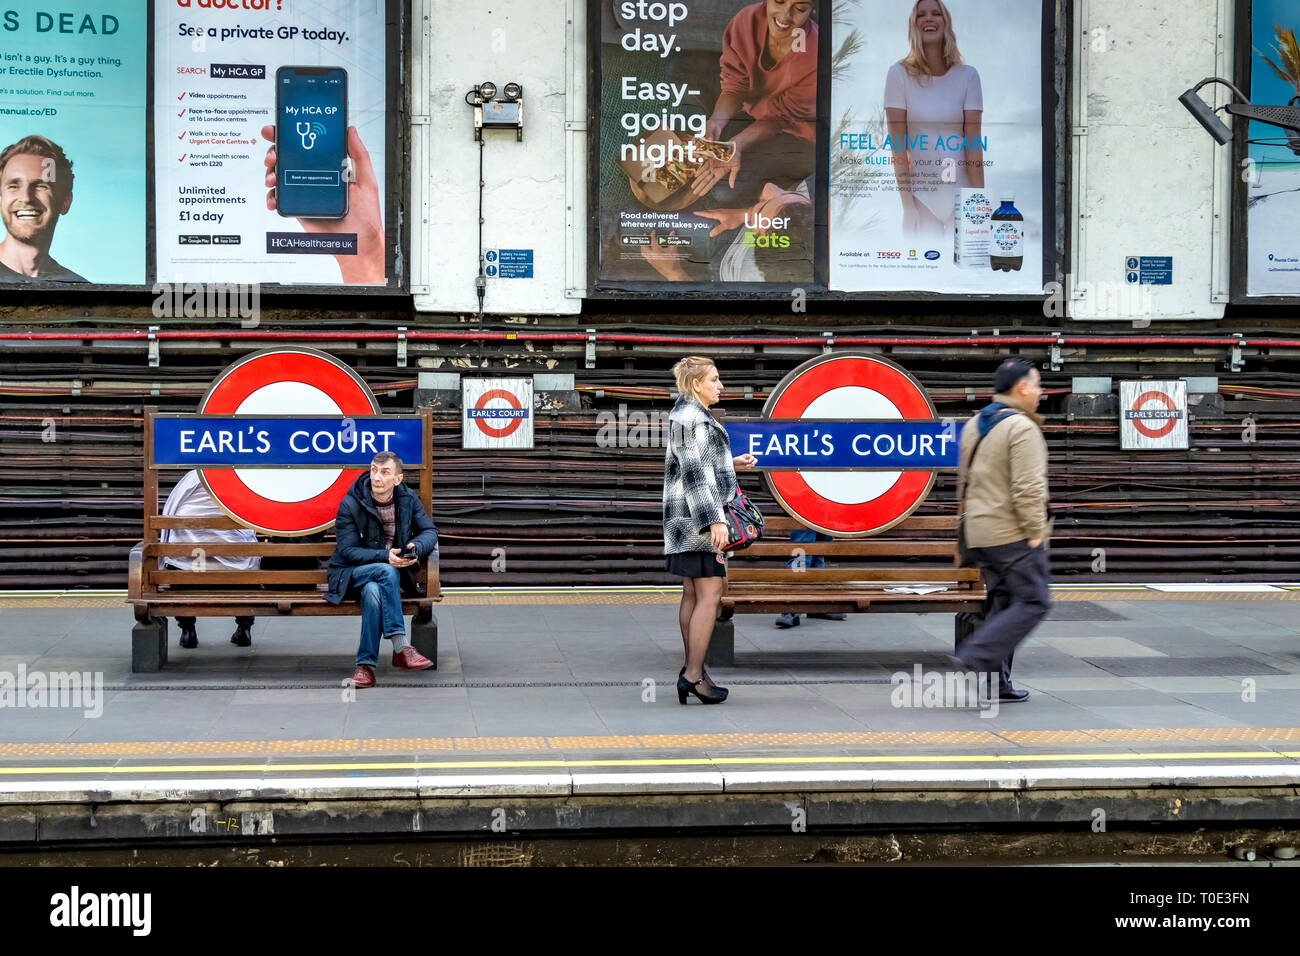 Personnes sur la plate-forme attendant un train District Line à la station de métro Earls court London, Londres, Royaume-Uni Banque D'Images